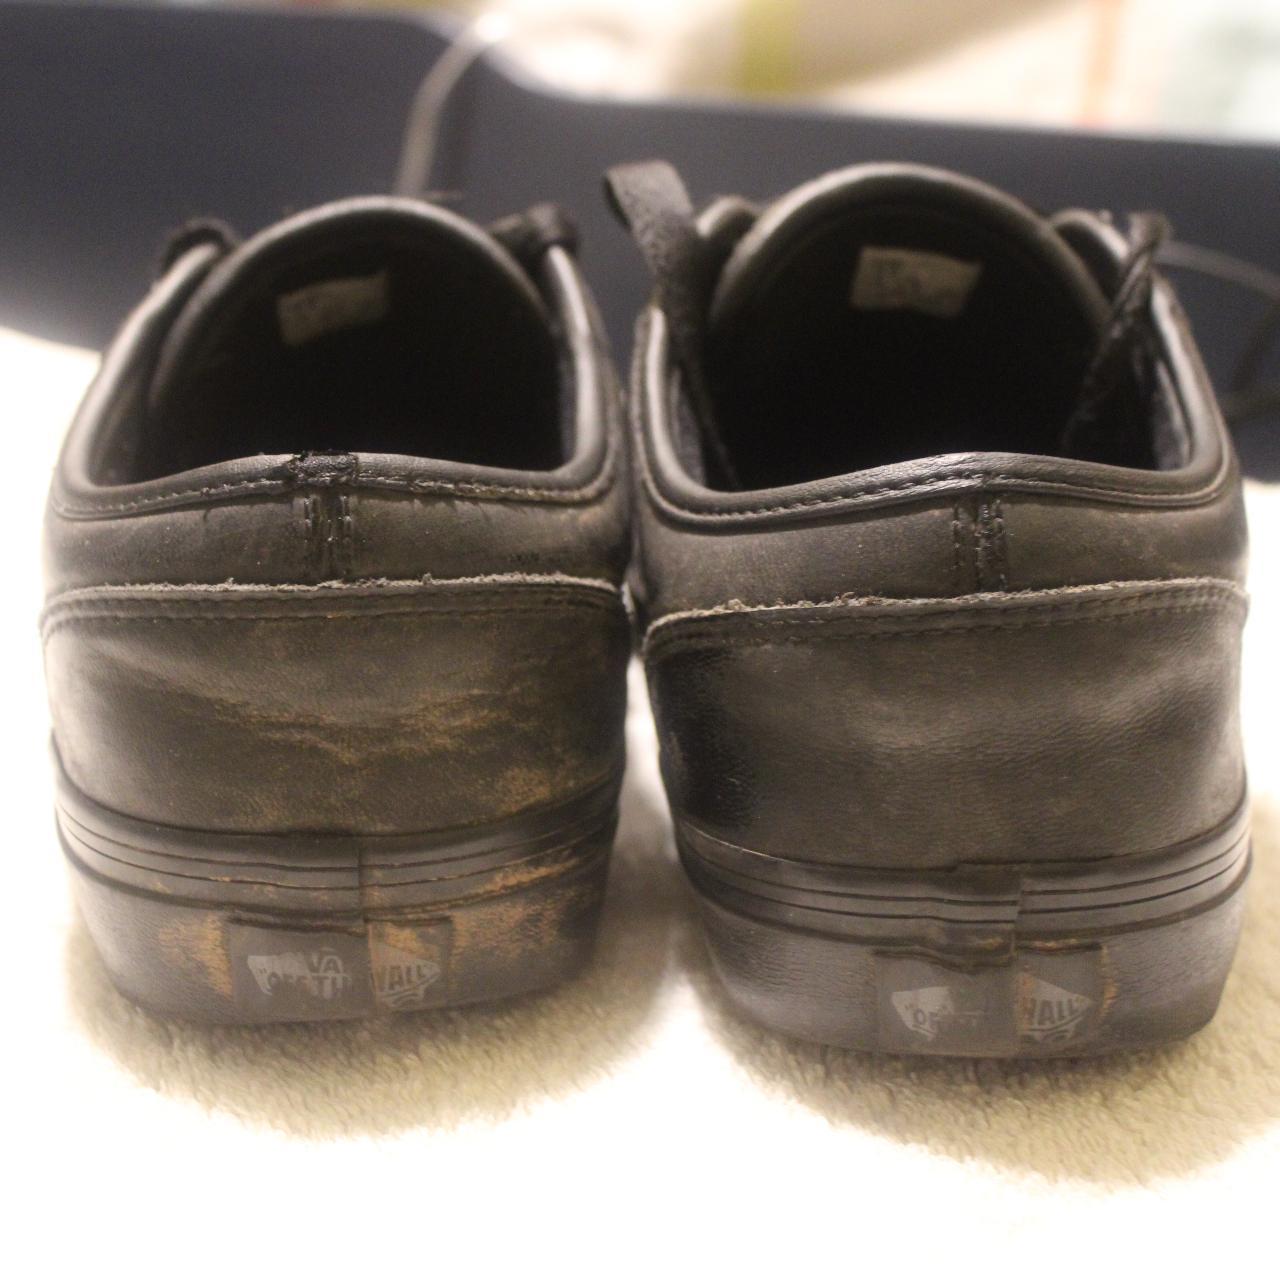 vans shoes. good condition a bit of wear but no... - Depop